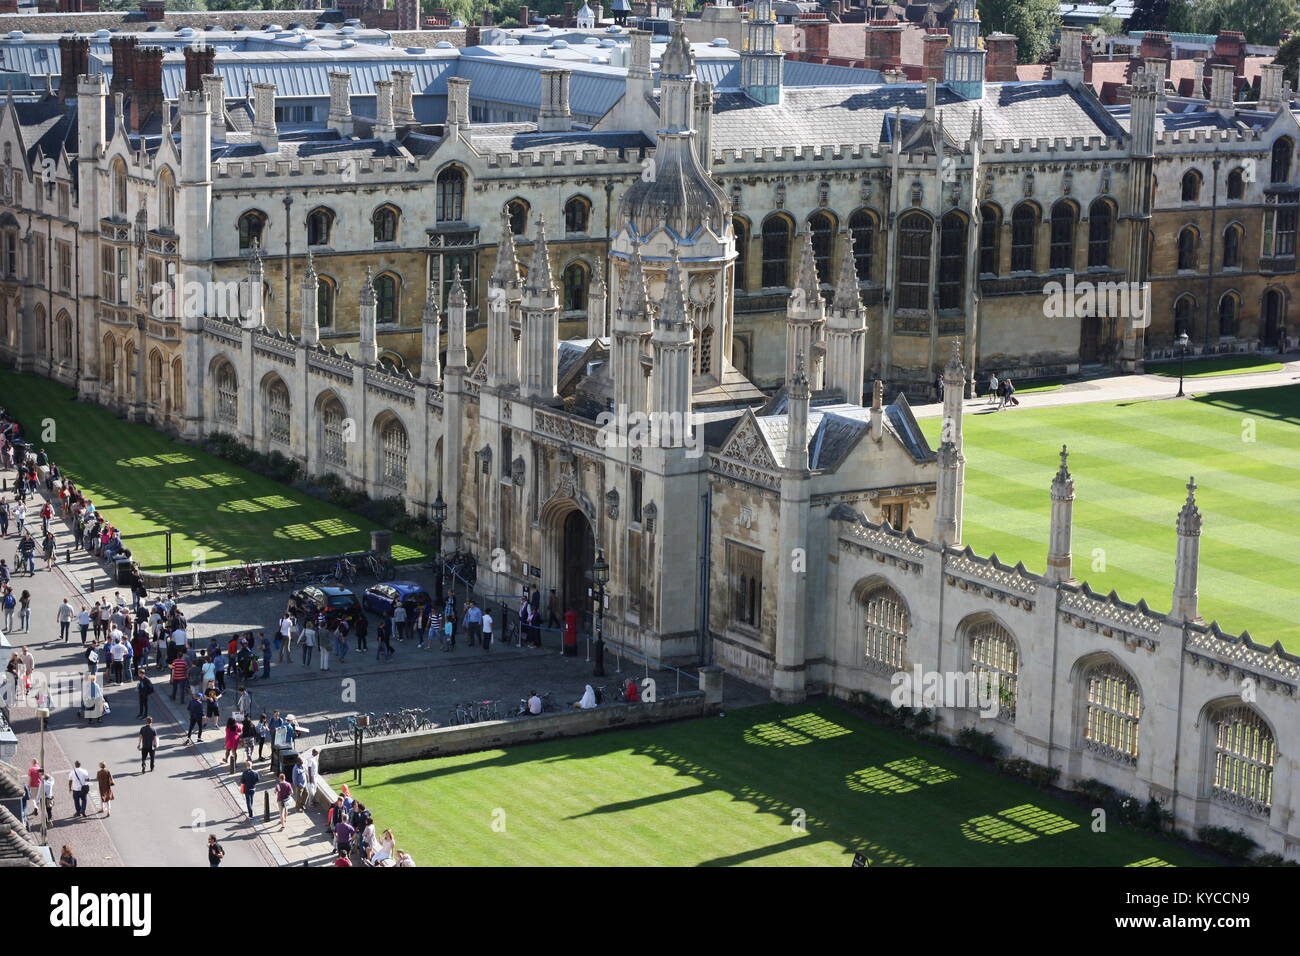 Les collèges de Cambridge, Angleterre Banque D'Images